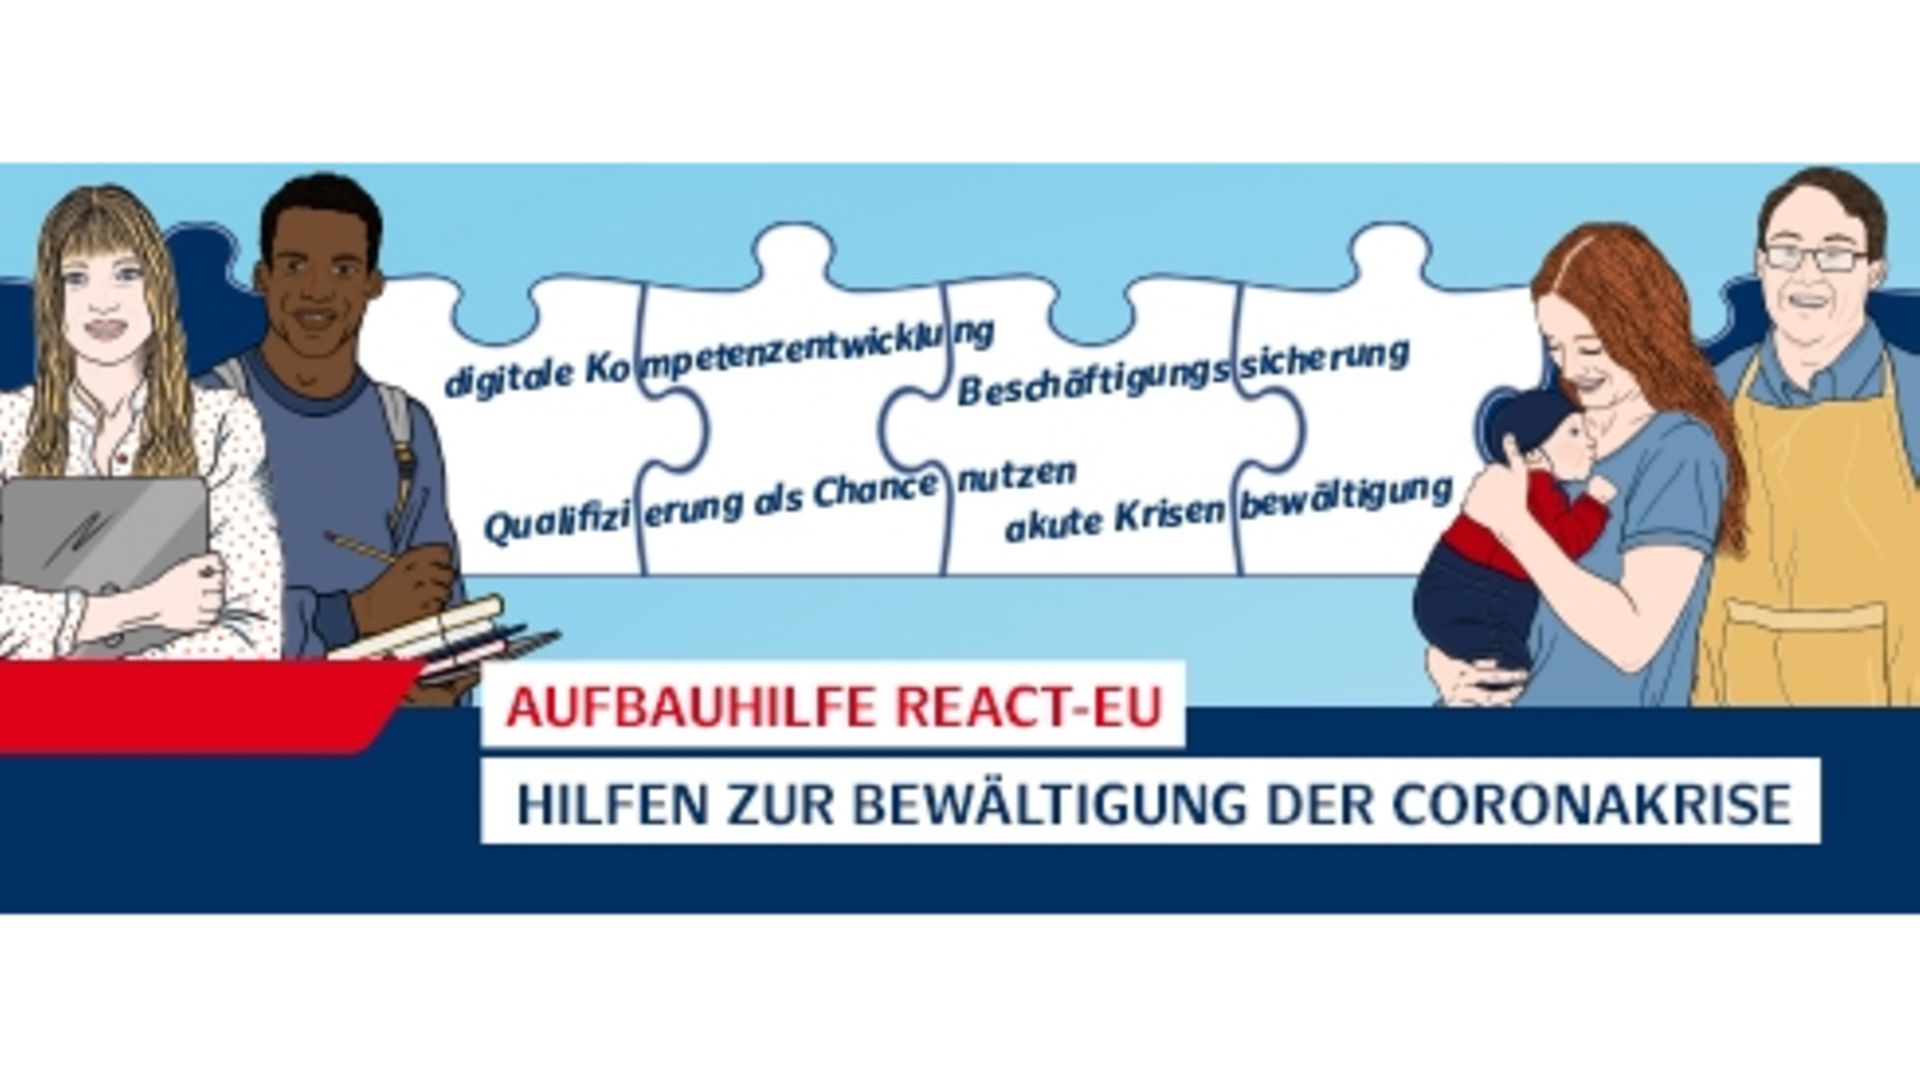 Illustrationen von unterschiedlichen Menschen vor Puzzleteilen mit Zielen der Aufbauhilfe REACT-EU.